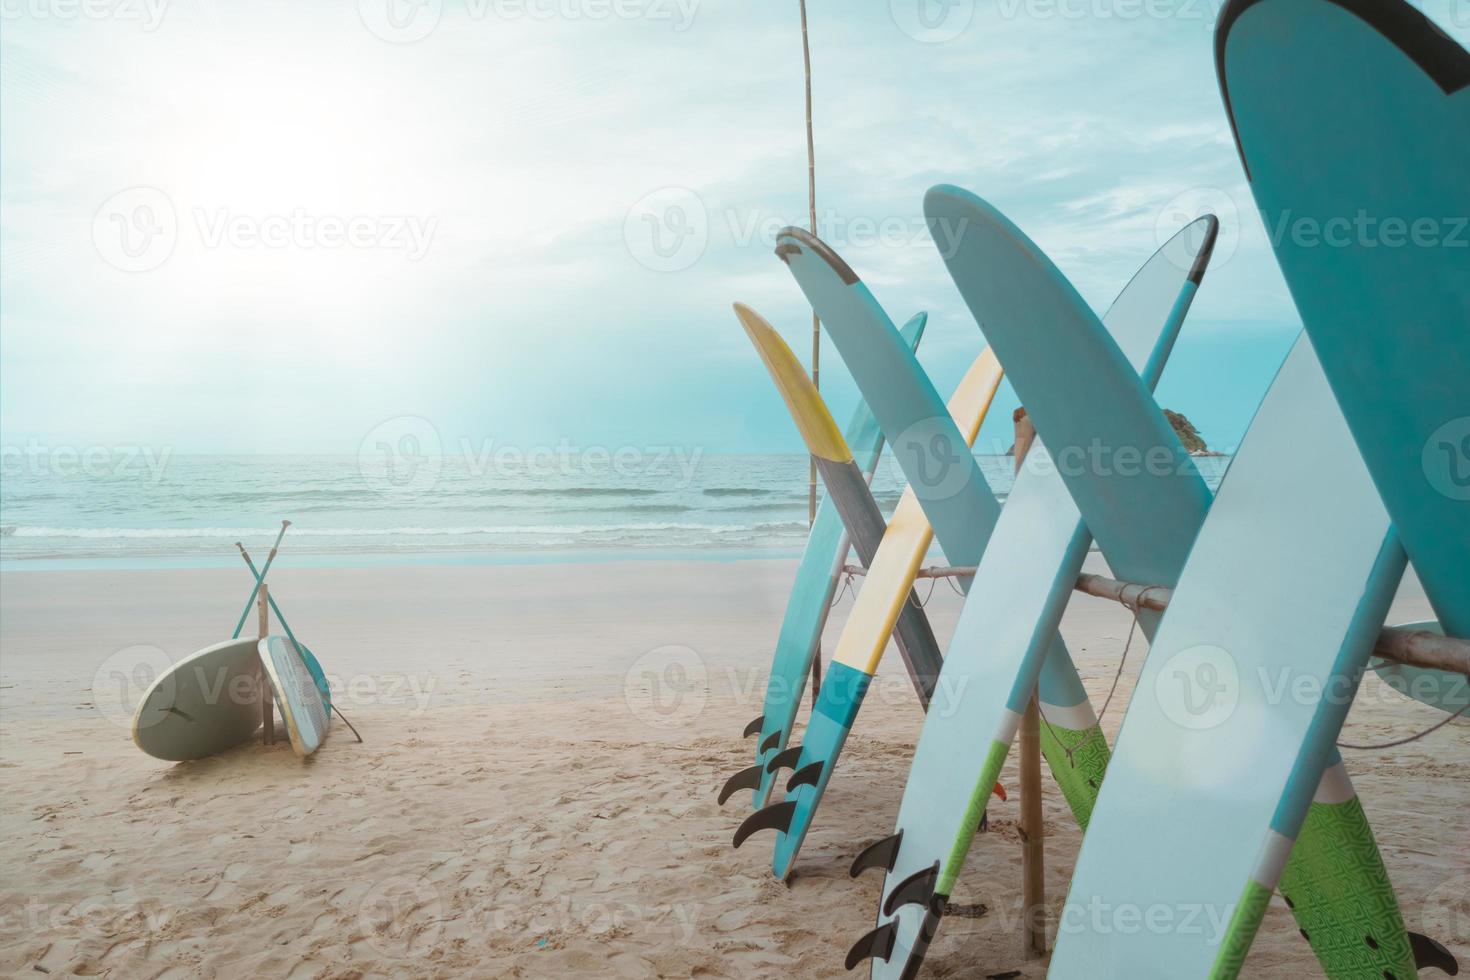 molte tavole da surf in affitto in spiaggia estiva con luce solare cielo blu. foto